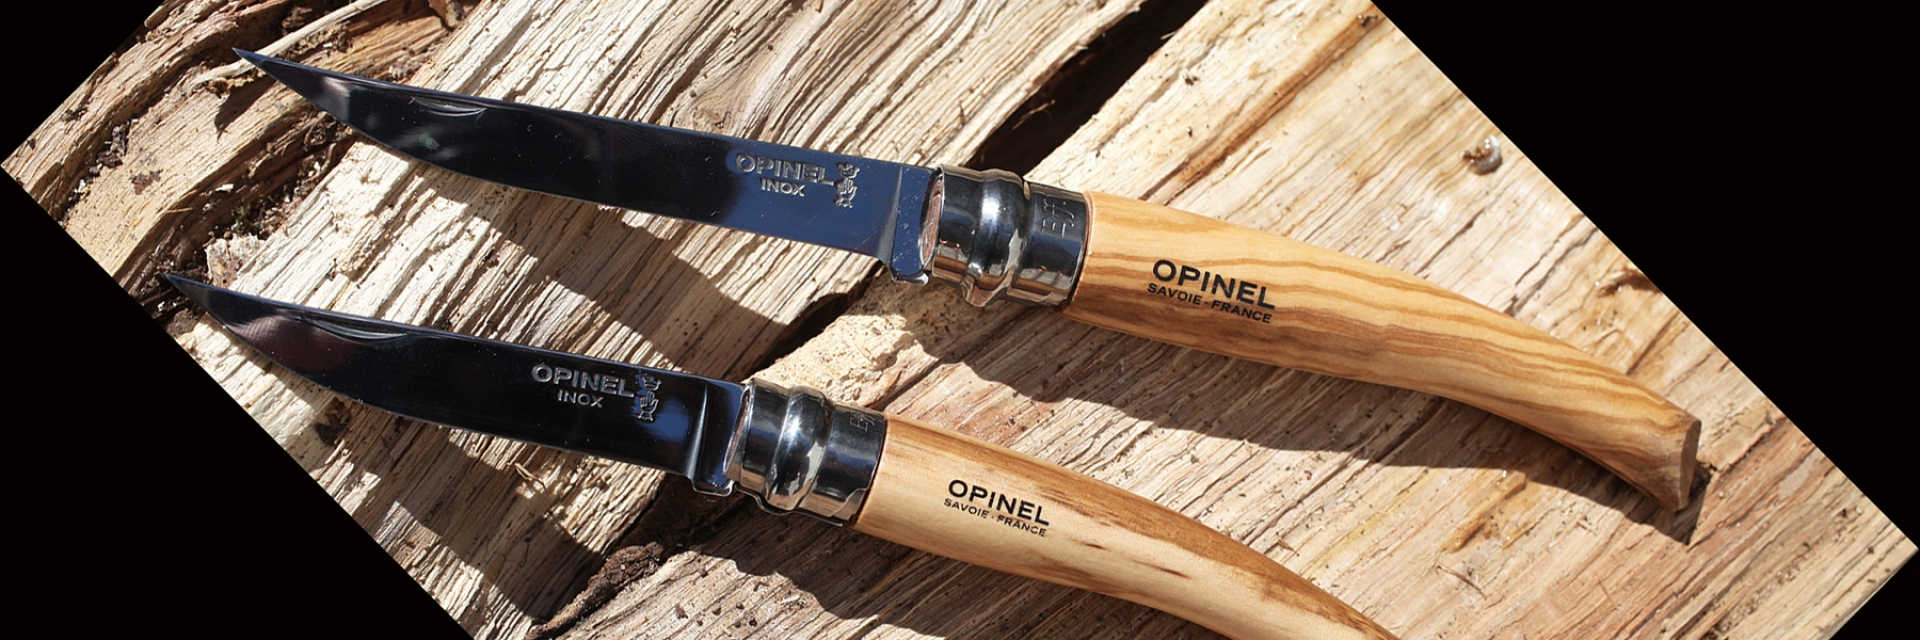 картинка Нож филейный Opinel №8, нержавеющая сталь, рукоять оливковое дерево, 001144